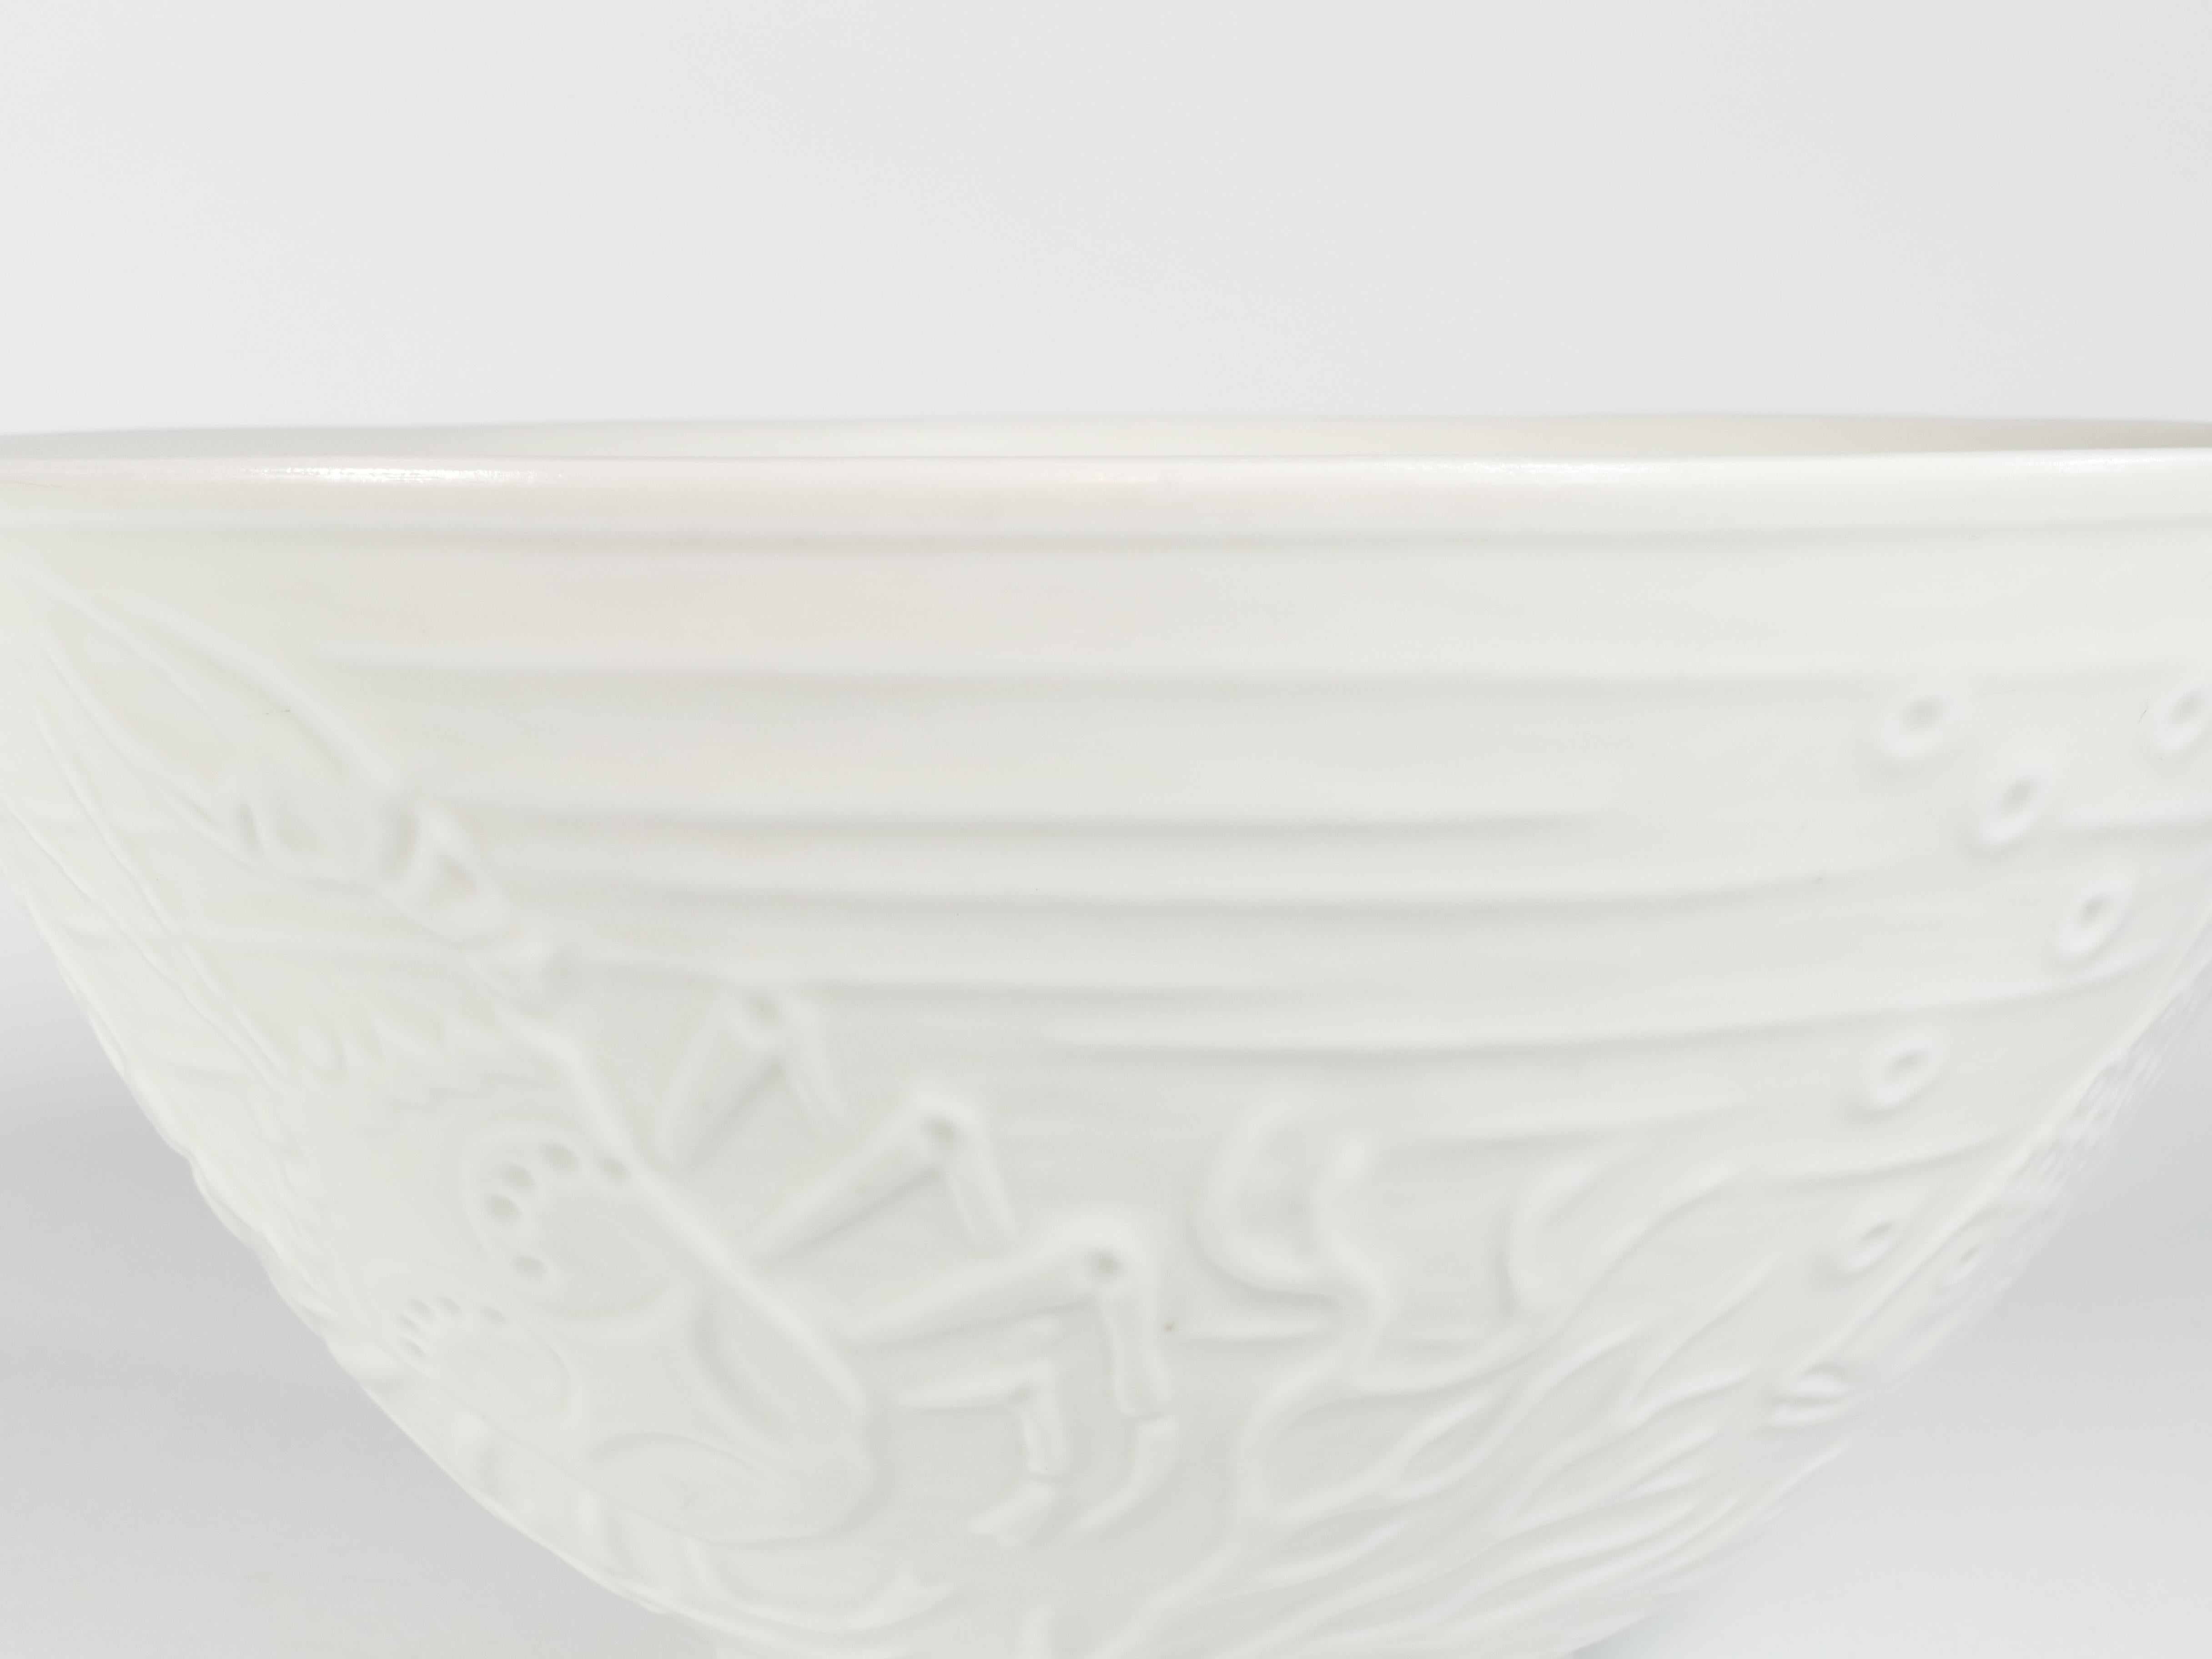  Il s'agit d'un grand et mince bol en porcelaine blanche translucide conçu par Gunnar Nylund pour ALP Lidköping/Rörstrand. Le bol présente un très beau décor en relief représentant deux poissons, un crabe et une anguille. La présence du Label 